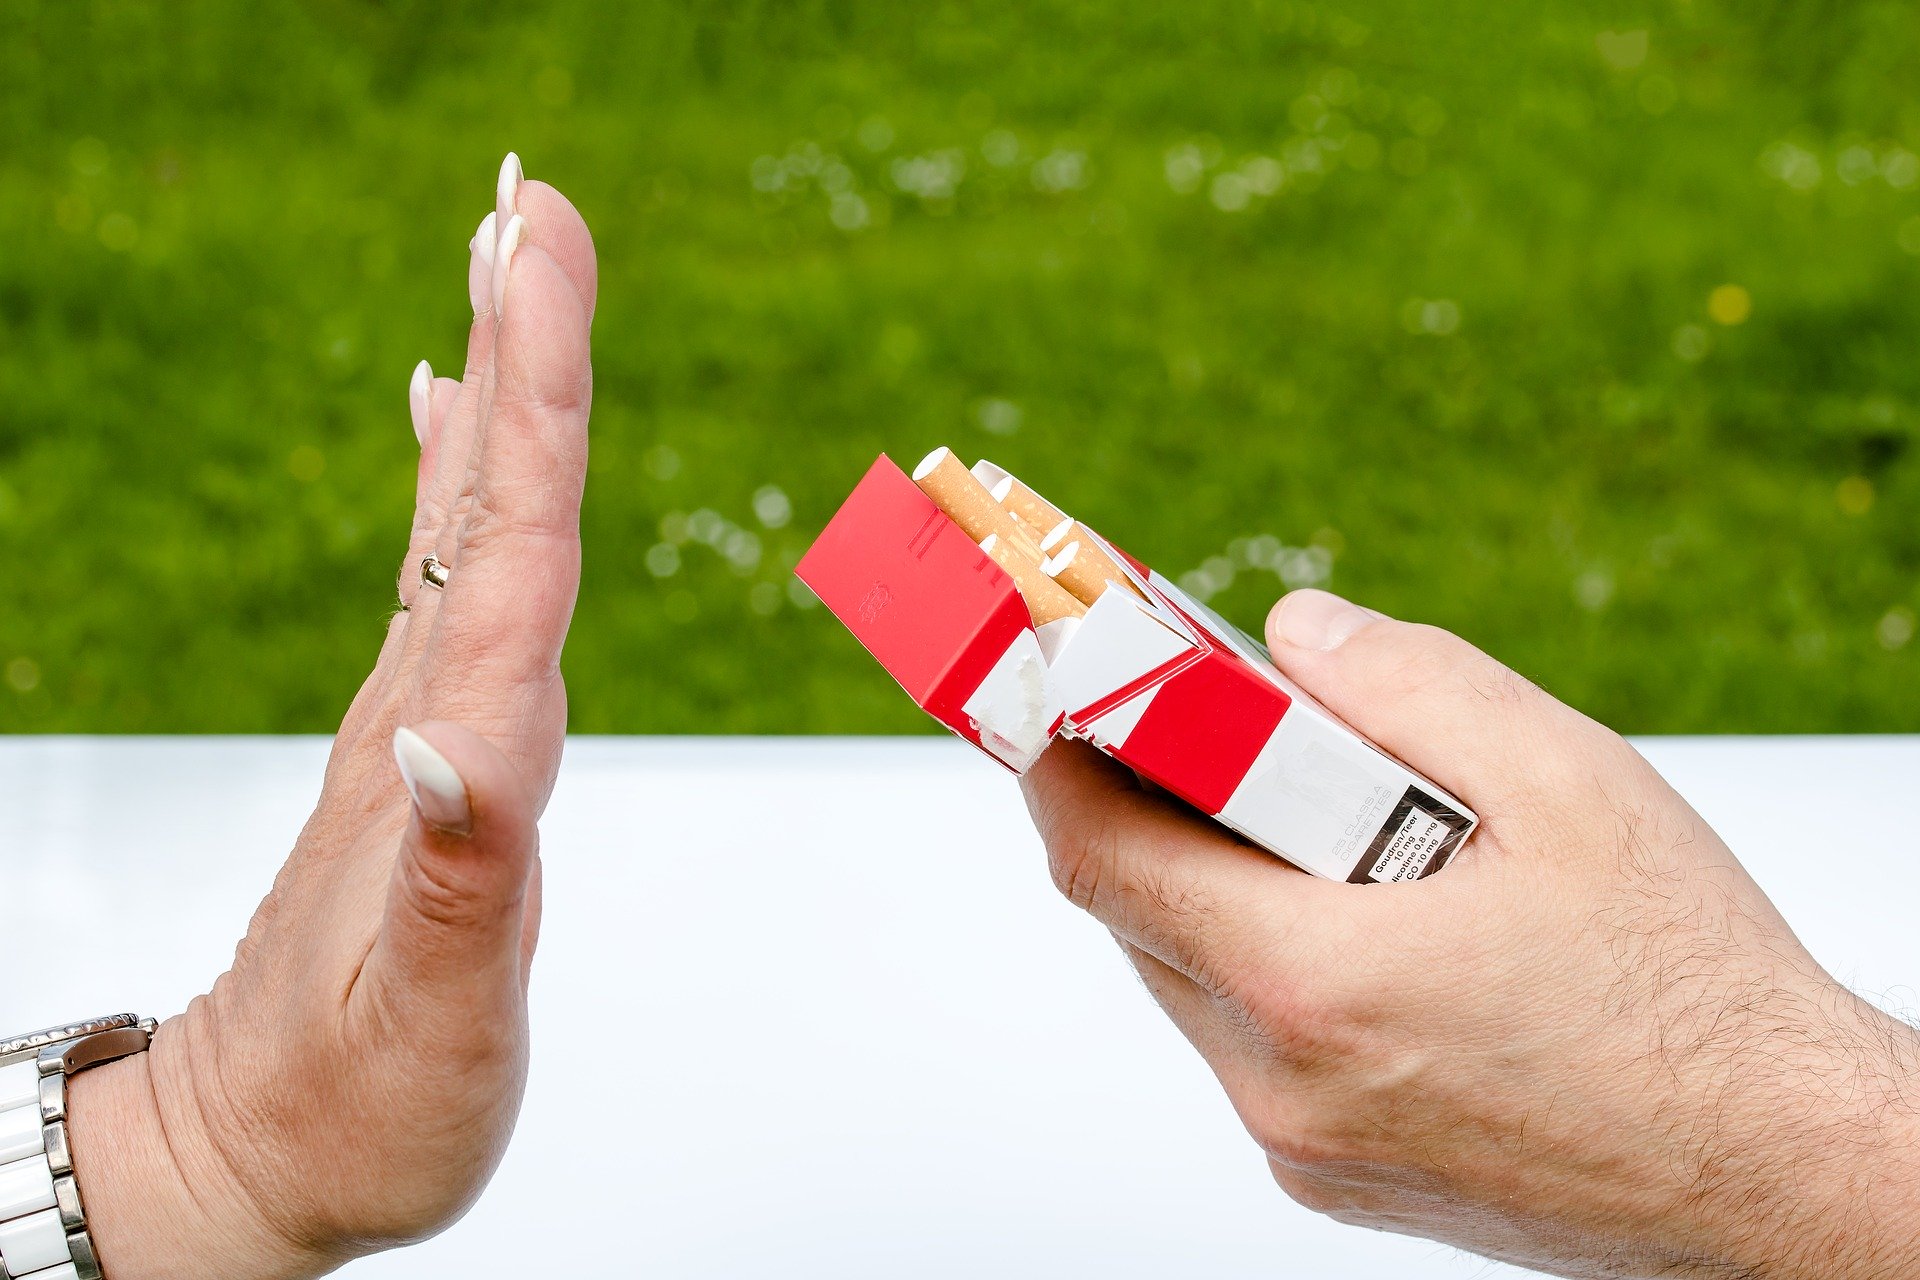 Fajčenie totiž poškodzuje krvné cievy v tkanivách a orgánoch, a to isté robí cukrovka. Keď sa teda oboje zíde, riziká spôsobené cukrovkou sa podstatne zvyšujú.